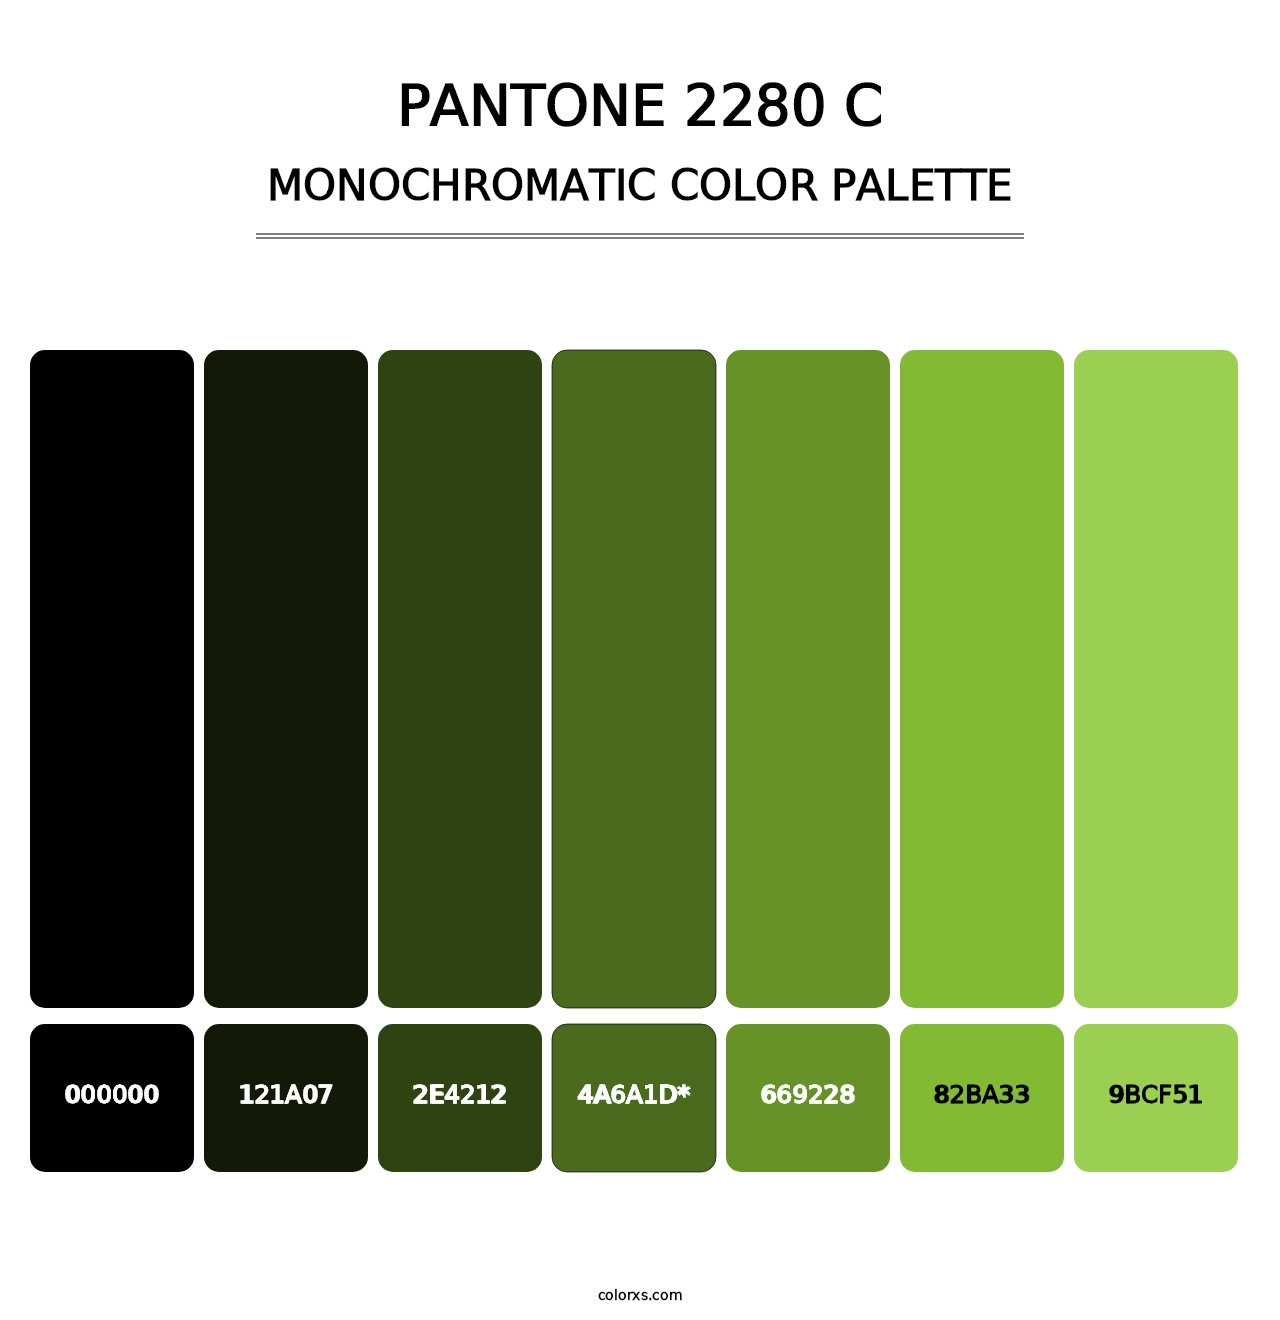 PANTONE 2280 C - Monochromatic Color Palette